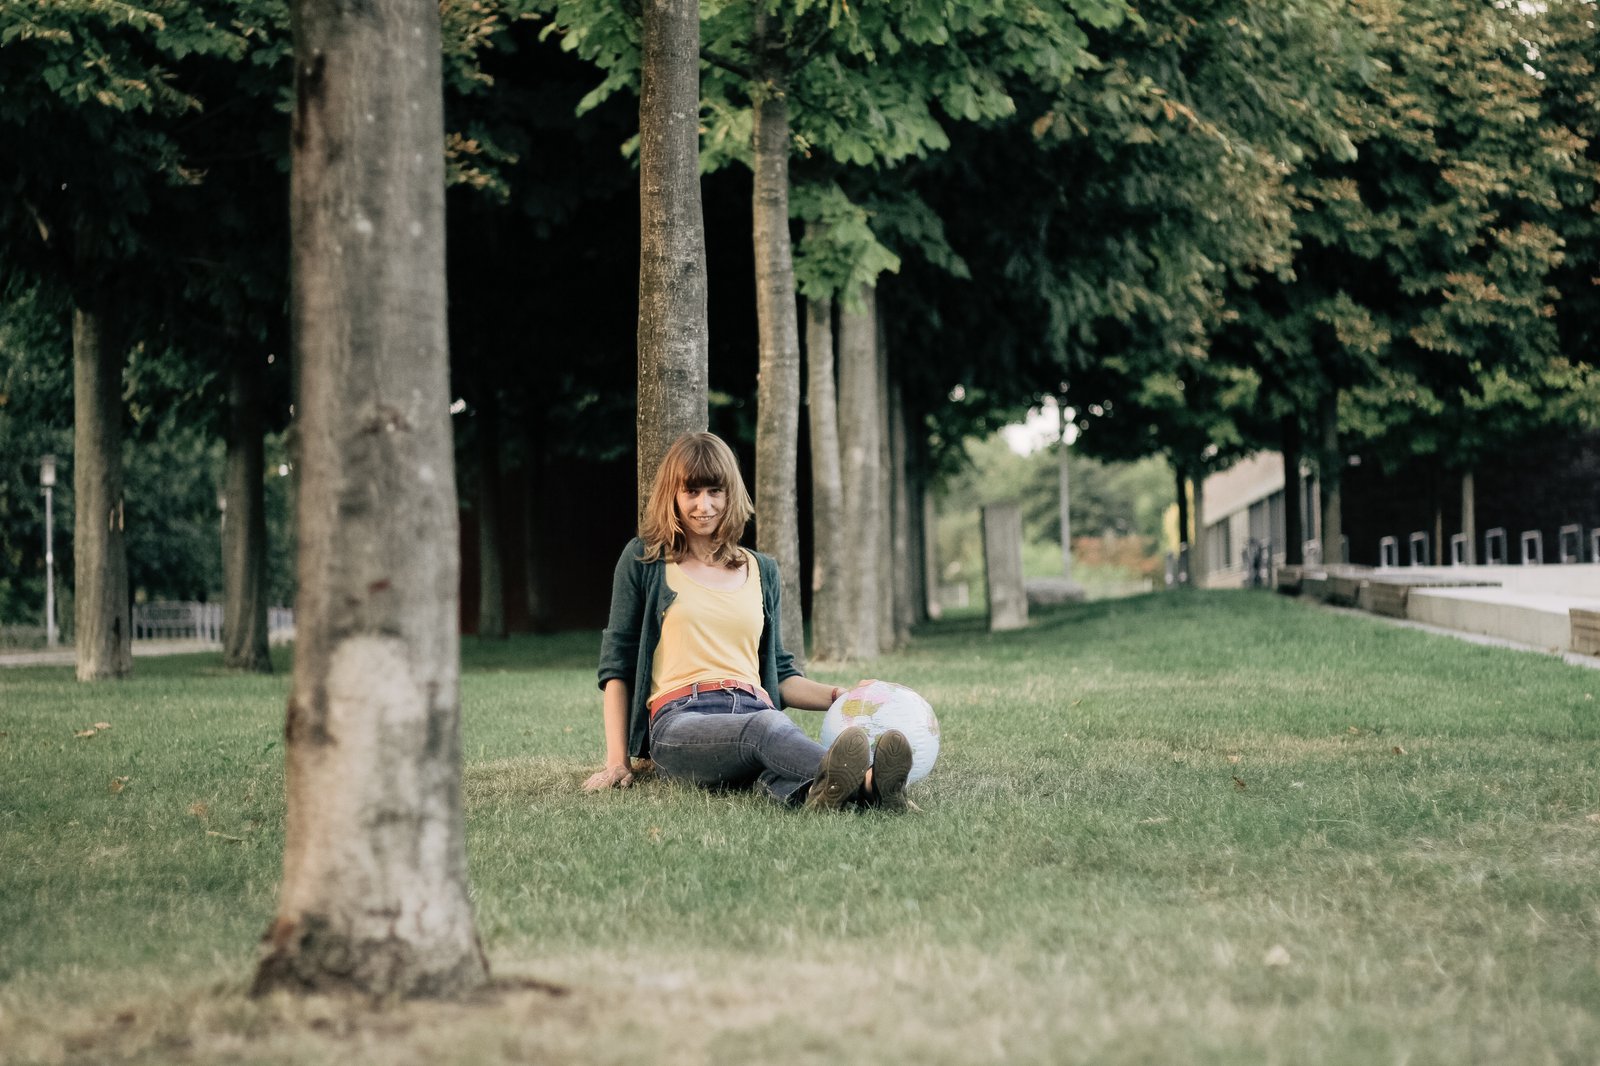 Eine Frau sitzt auf einem gepflegten Rasen und leht sich an einen dünnen Baum an. Neben ihr stützt ihre Hand auf einem aufblasbaren Globus.